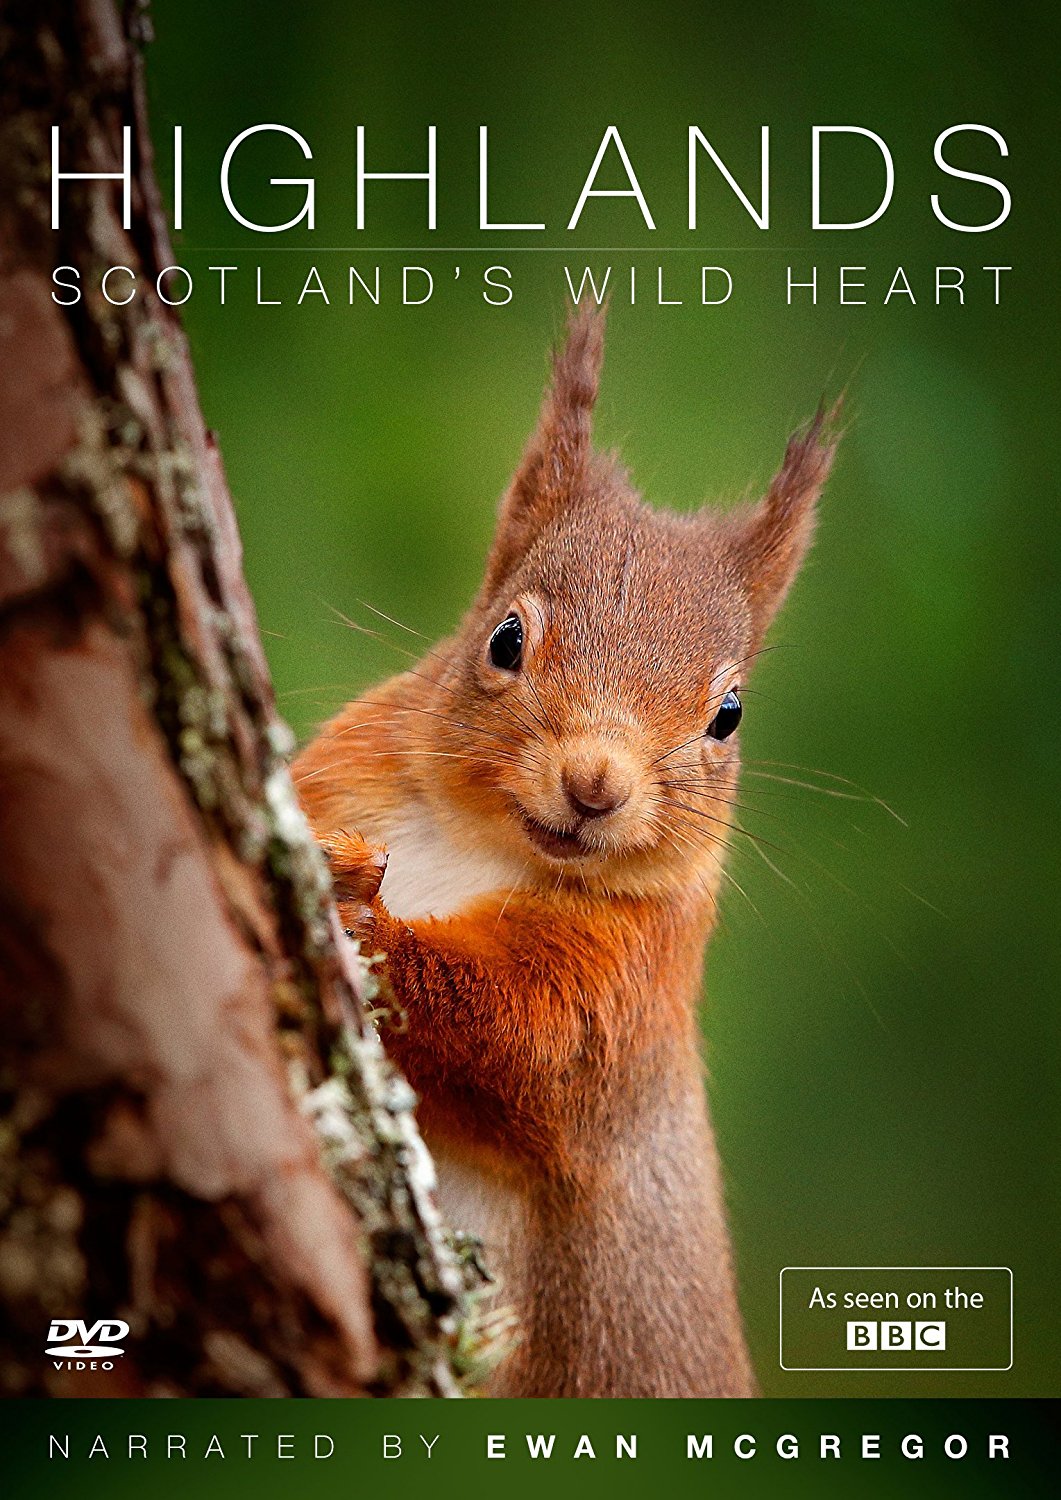 Nat Geo Wild: Дикая природа Шотландии: Высокогорье - Wild Scotland. Highlands